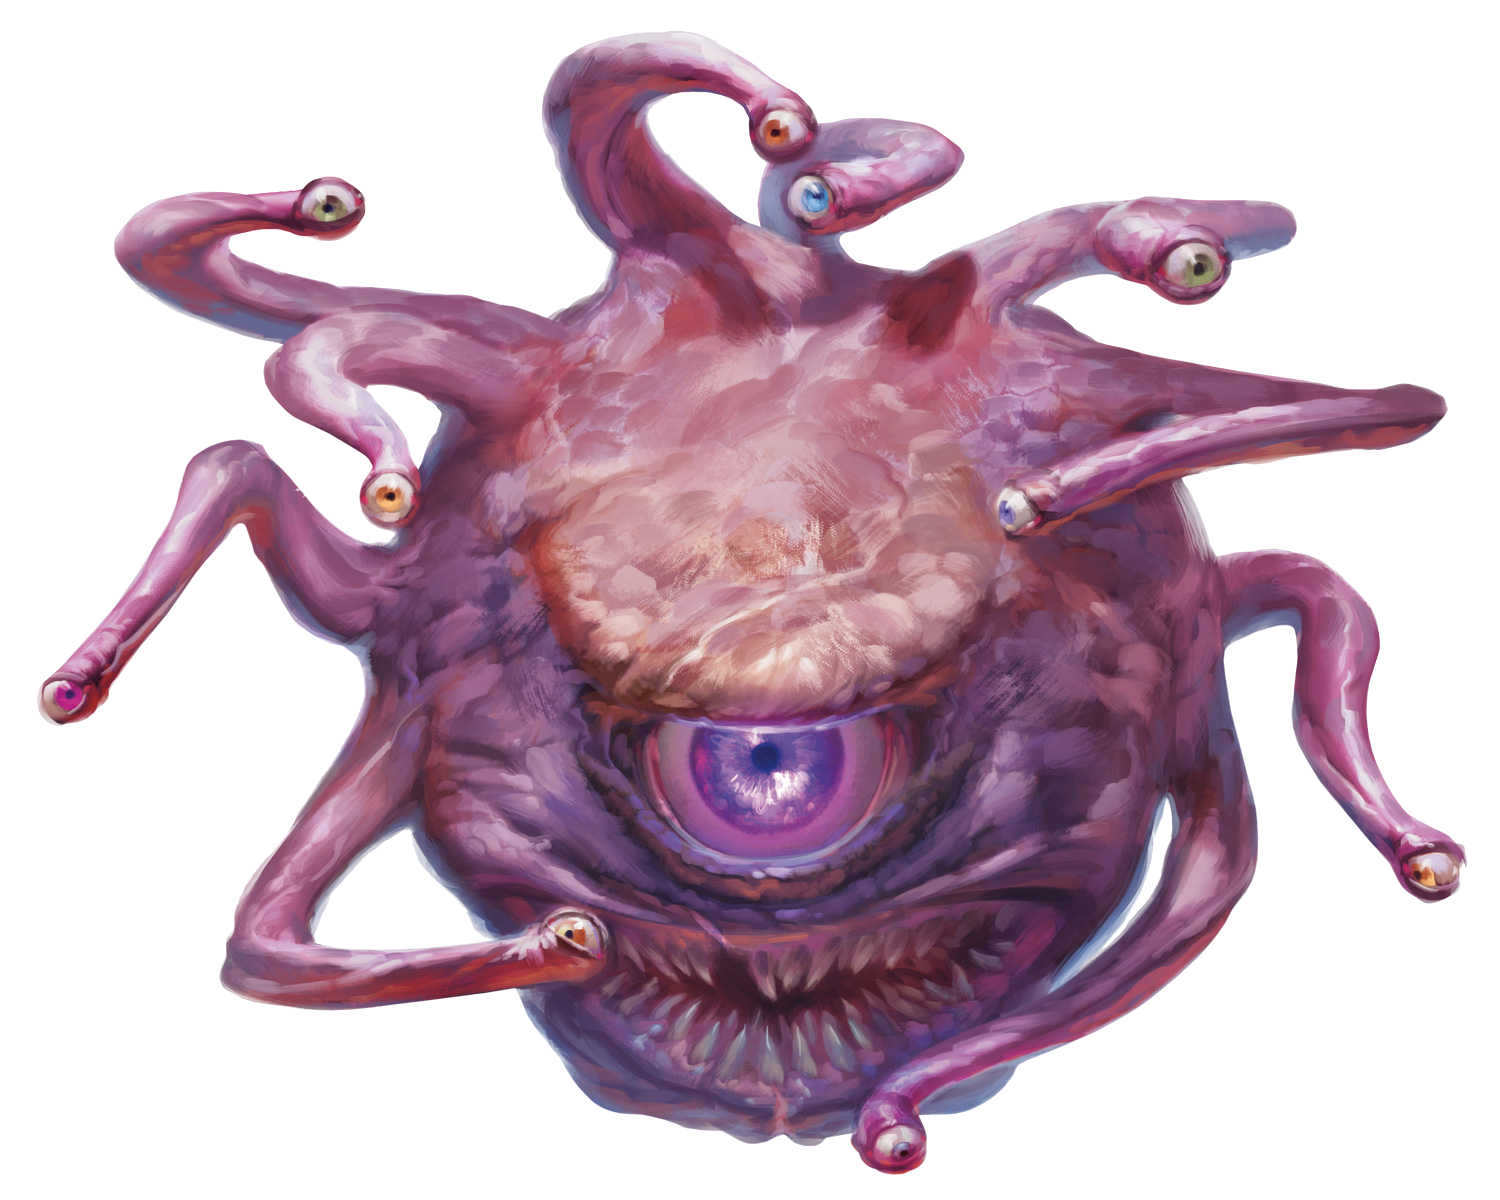 Ein Bild des Betrachters aus D&D. Ein Monster mit einem großen zahningen Mund und darüber ein großes glotzendes Auge, dazu kommen noch einige Augenstiele.